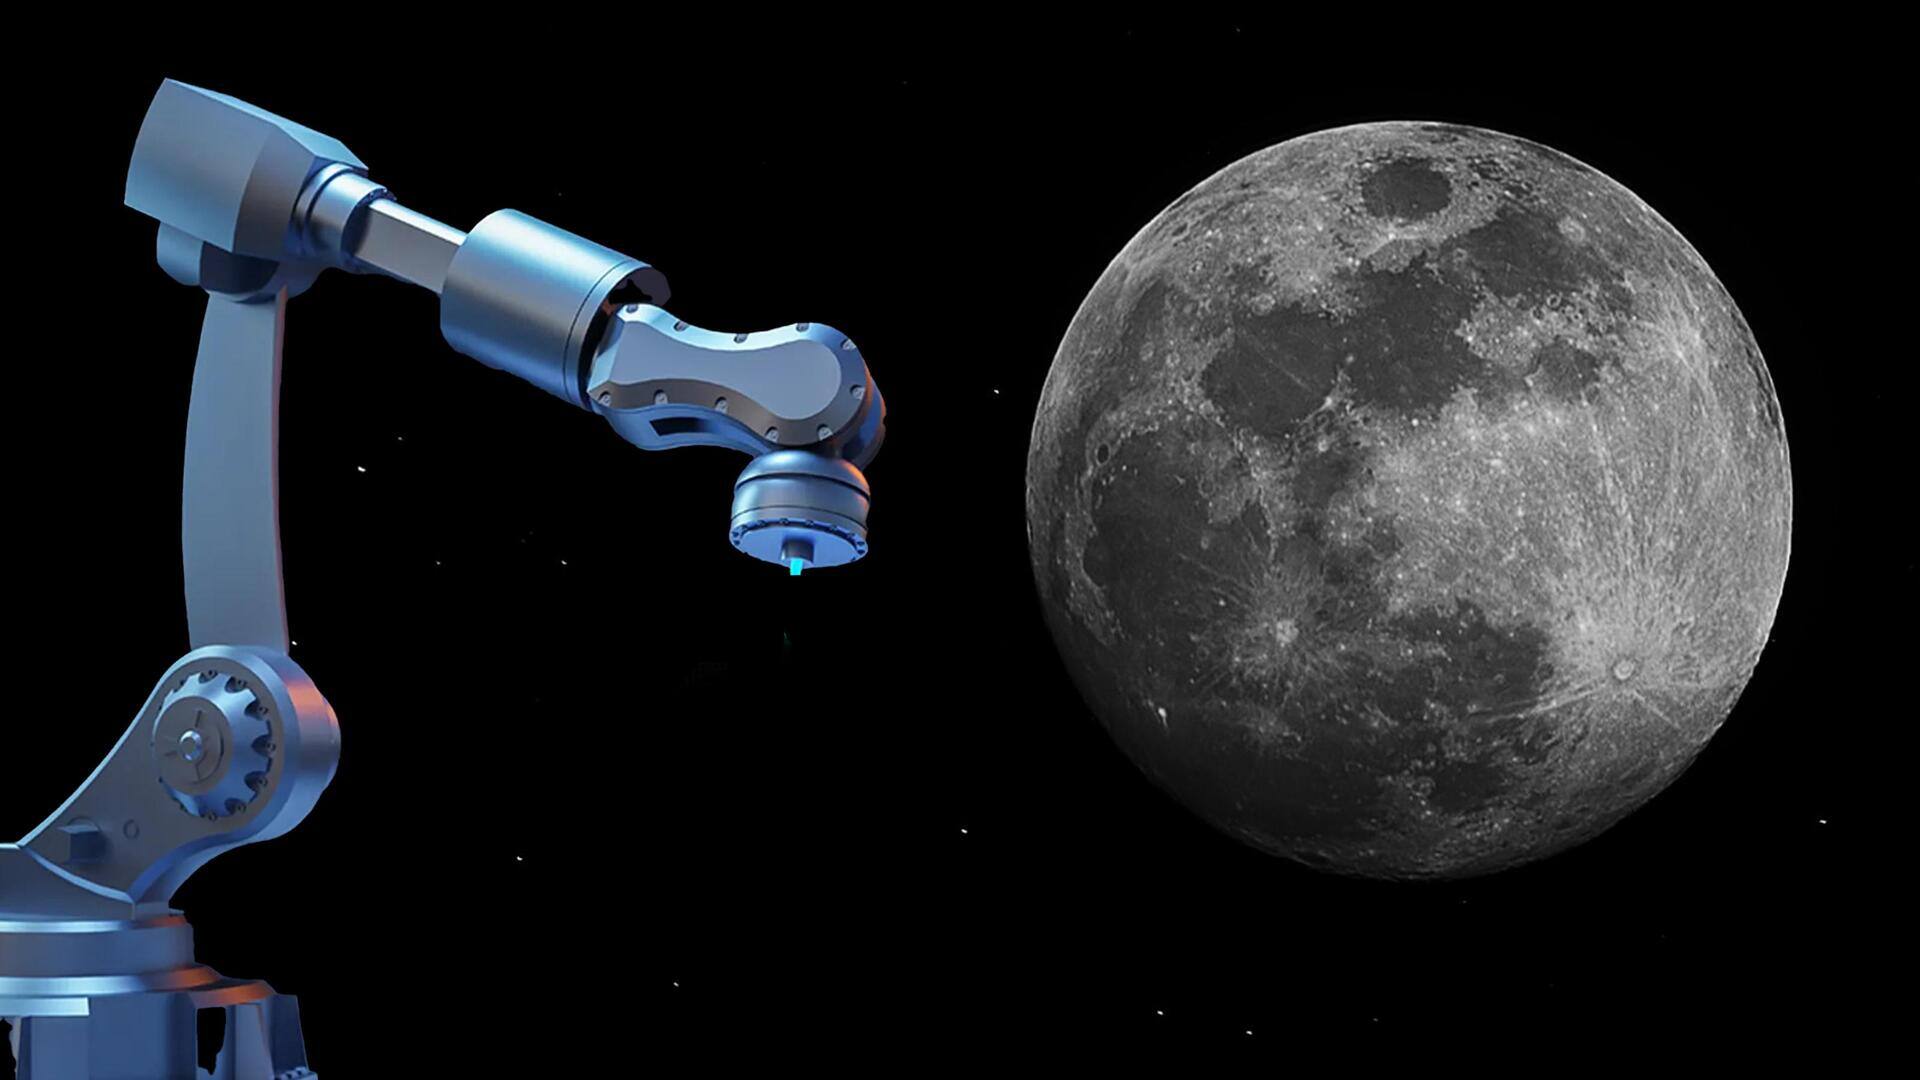 चीन 3D टेक्नोलॉजी से चंद्रमा पर बनाएगा बेस स्टेशन, चांद पर भेजेगा ईंट बनाने वाला रोबोट